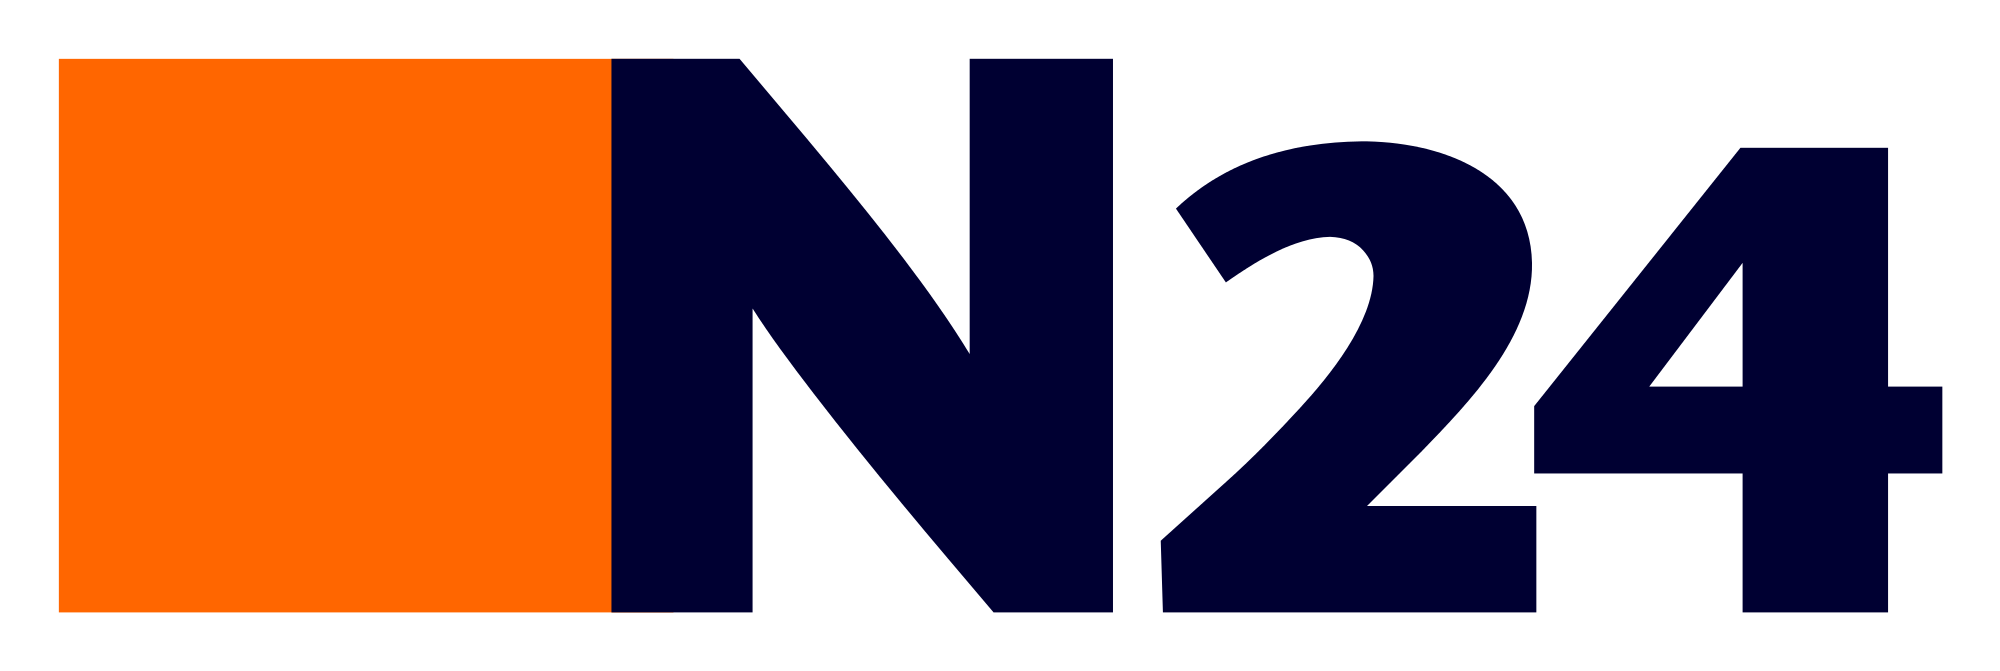 N24_logo.svg.png